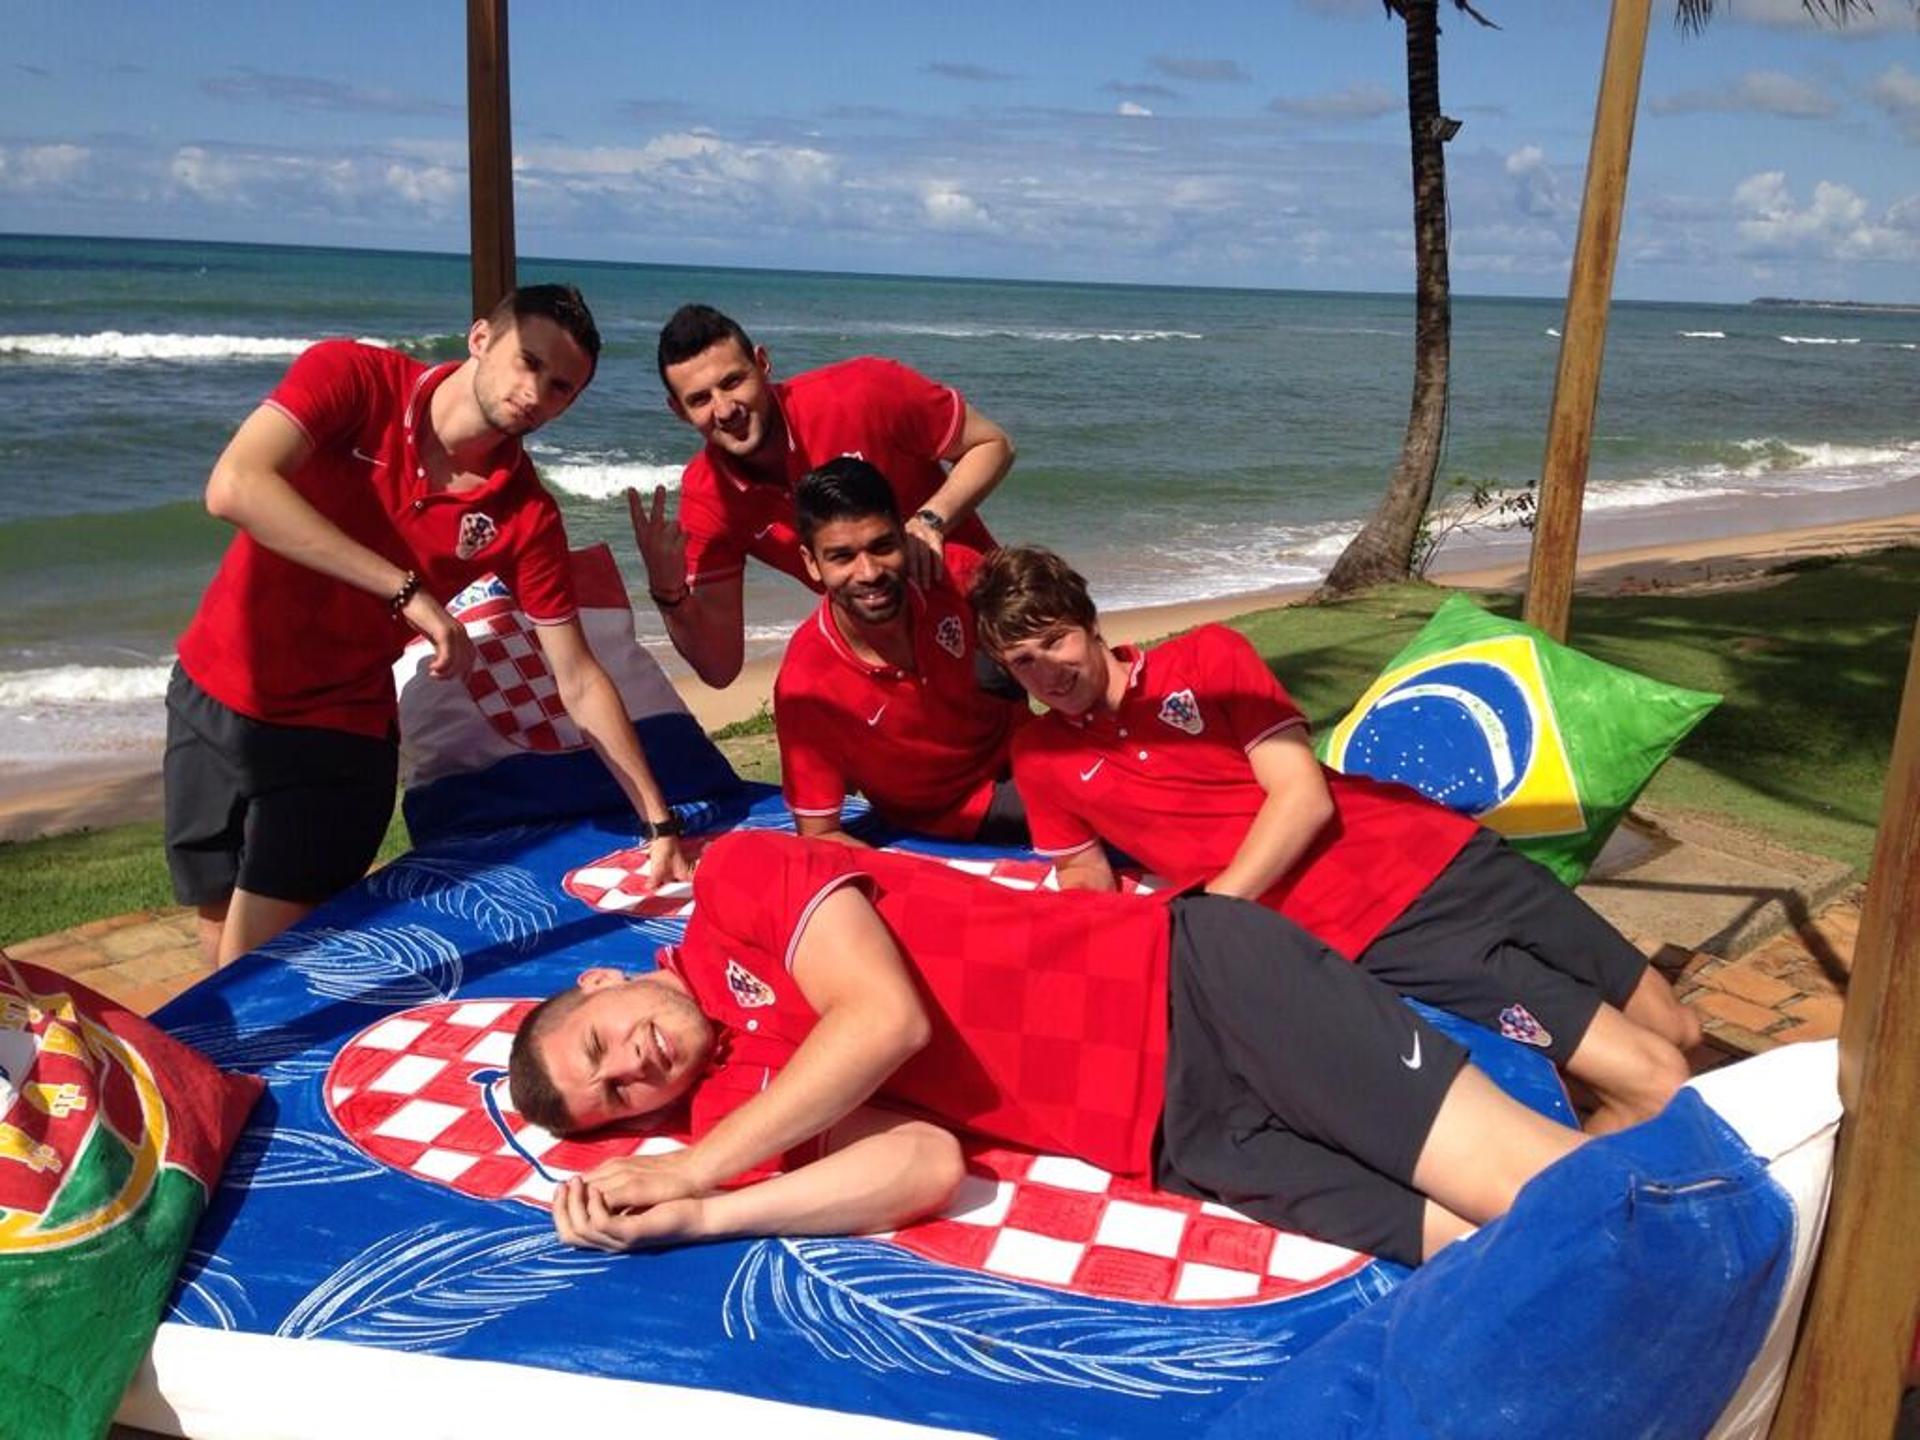 Atletas relaxam na praia (Foto: Reprodução / Facebook)